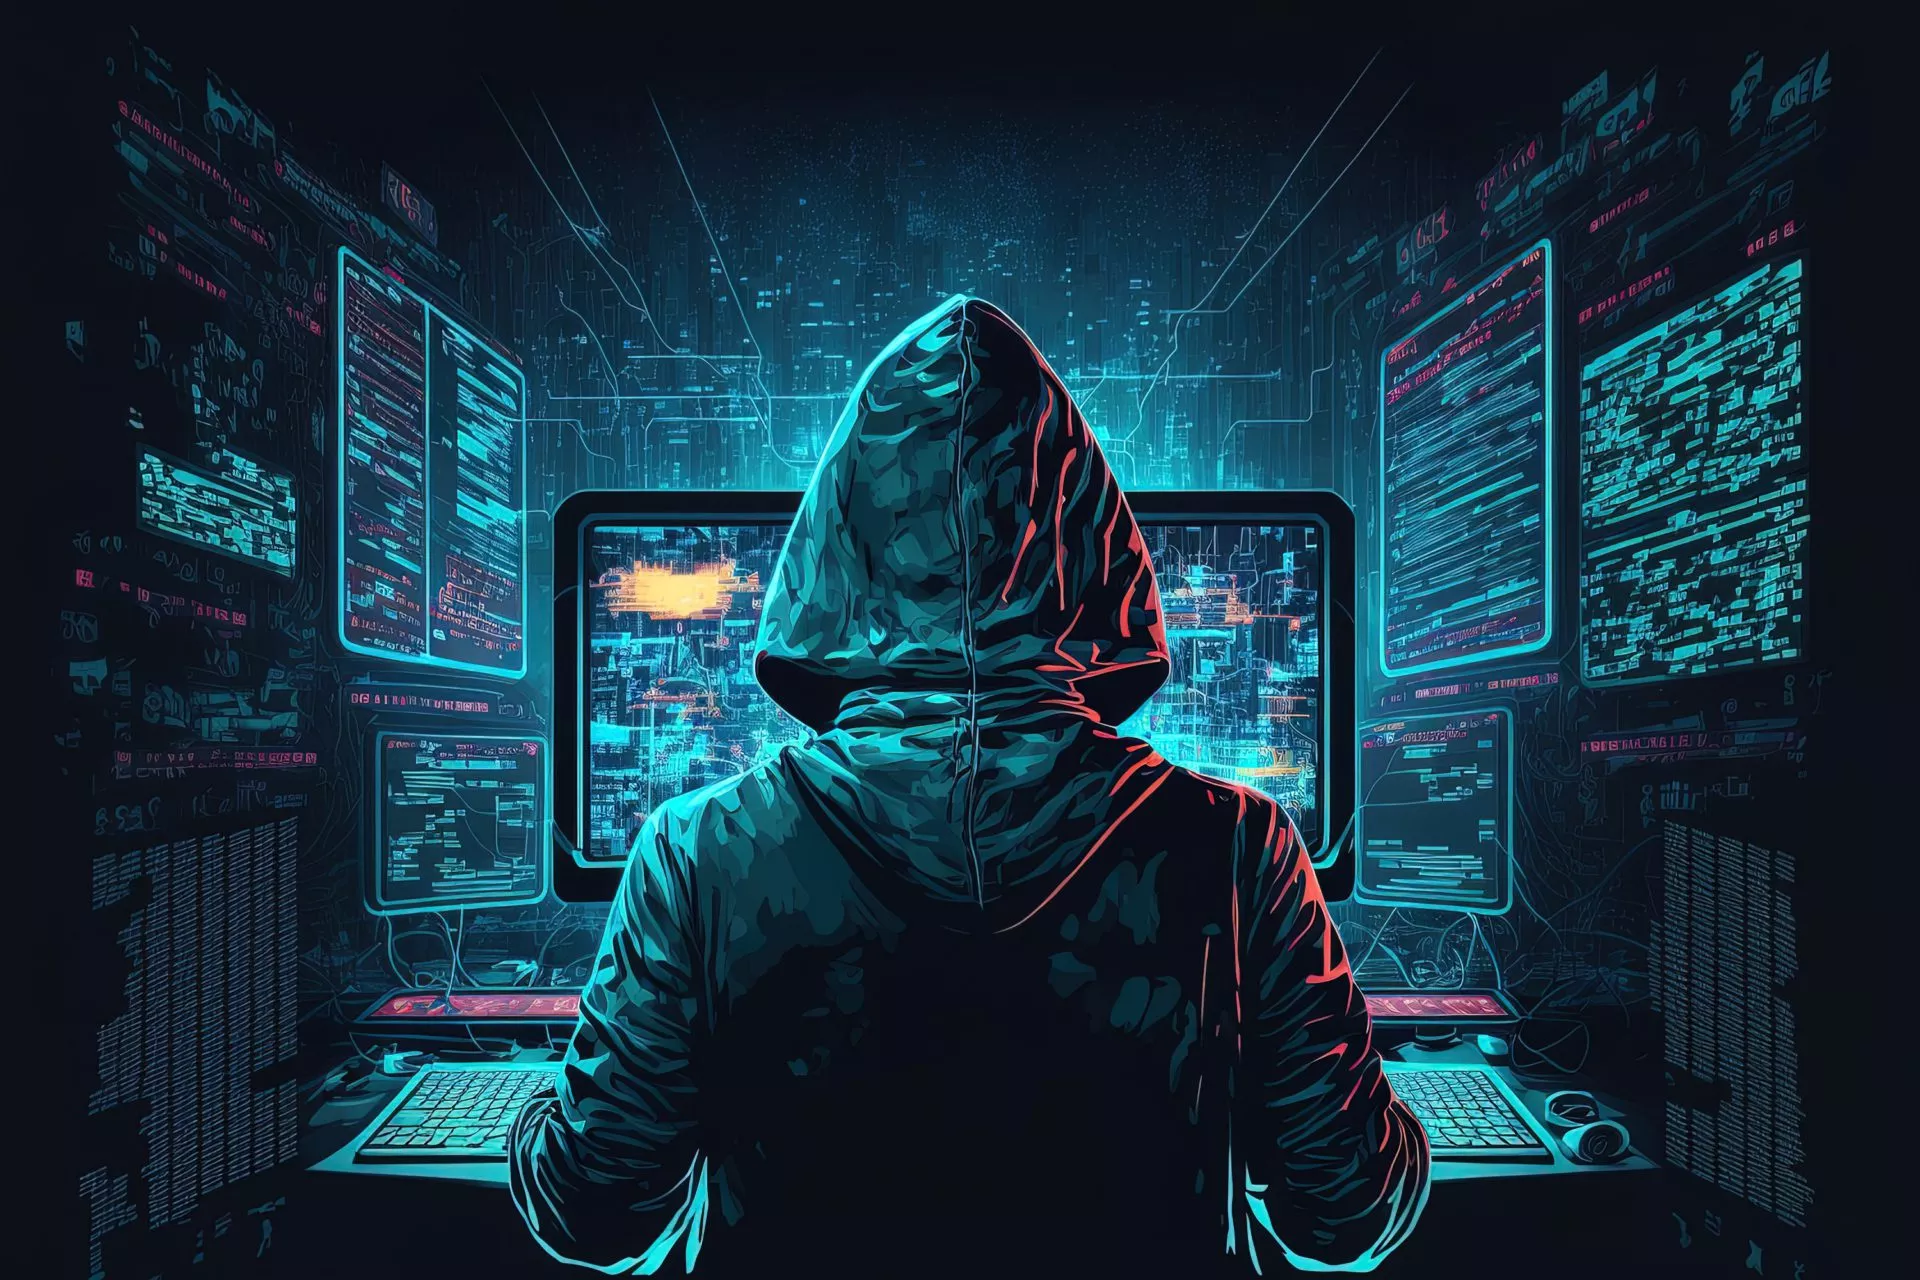 Cyber Hacker